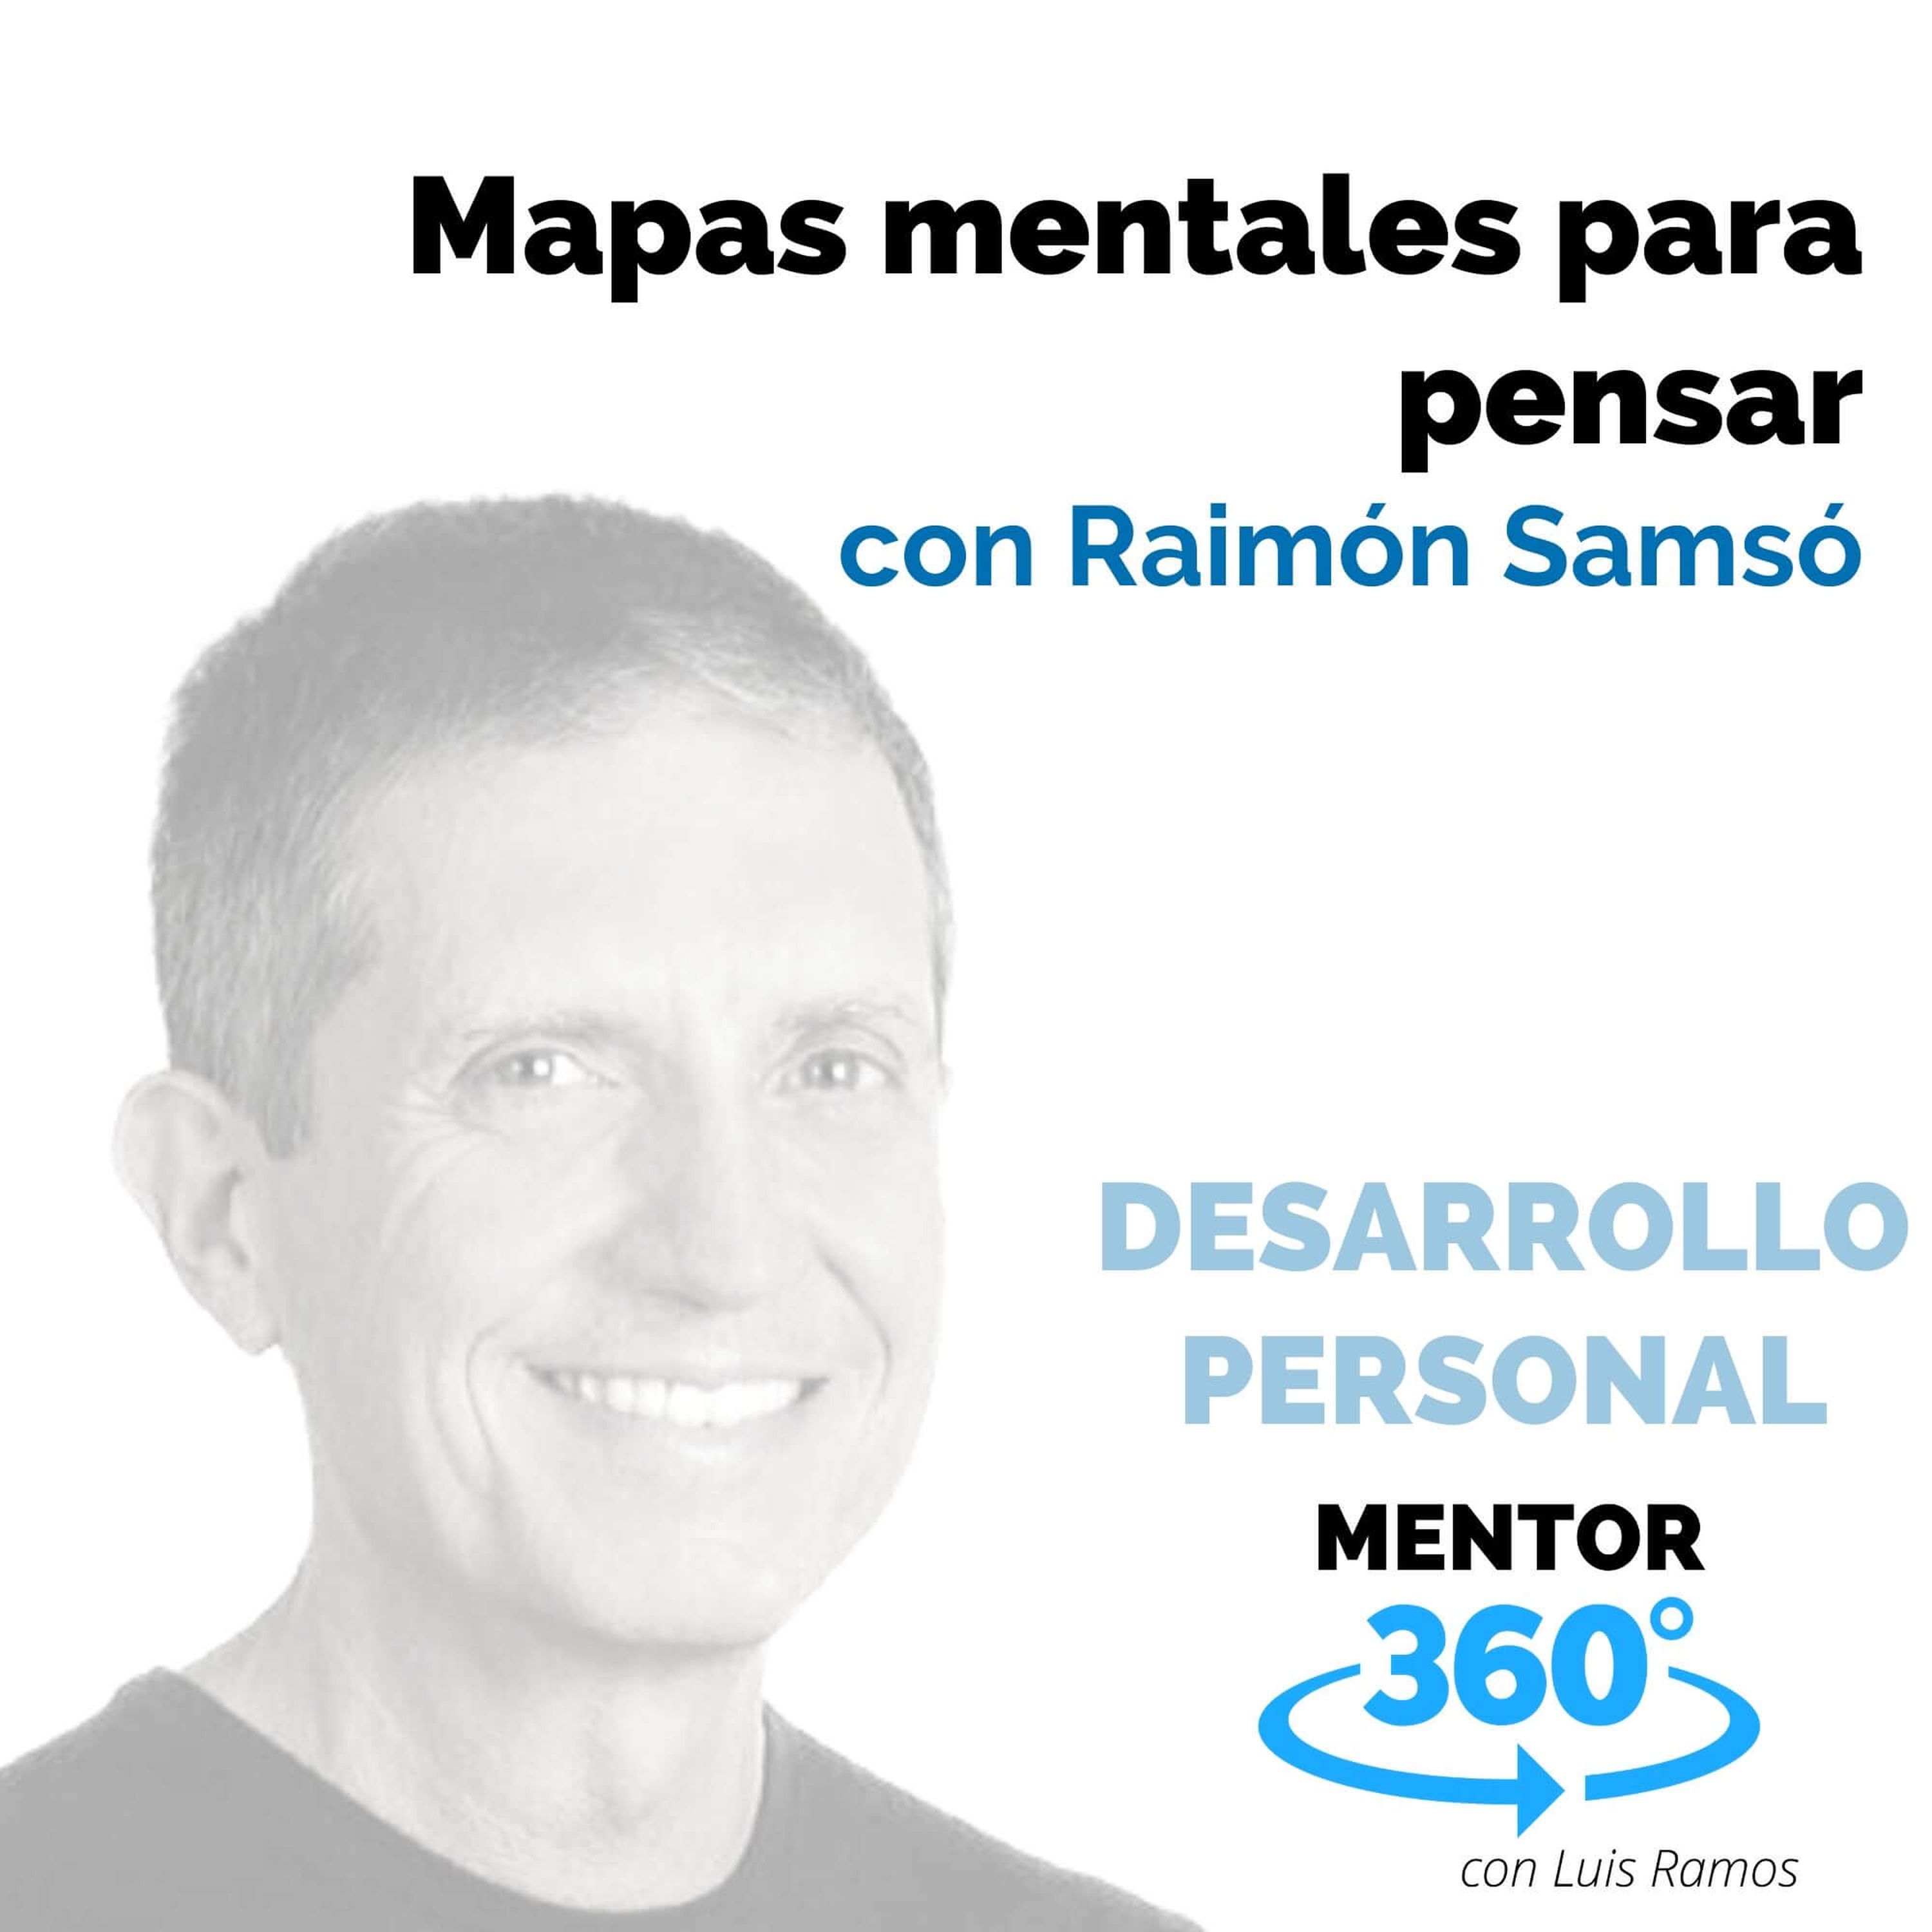 Mapas mentales para pensar, con Raimón Samsó - DESARROLLO PERSONAL